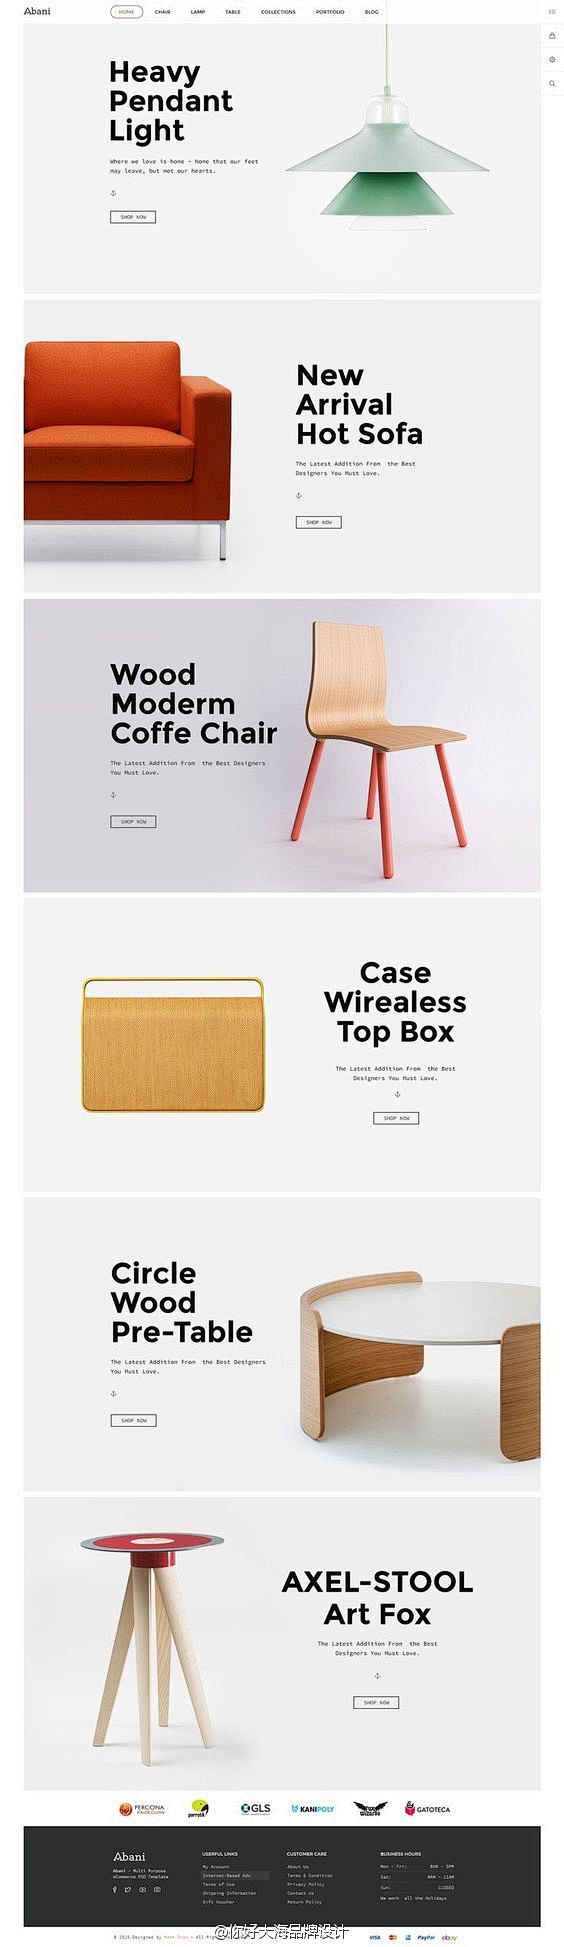 家具类网页设计版式